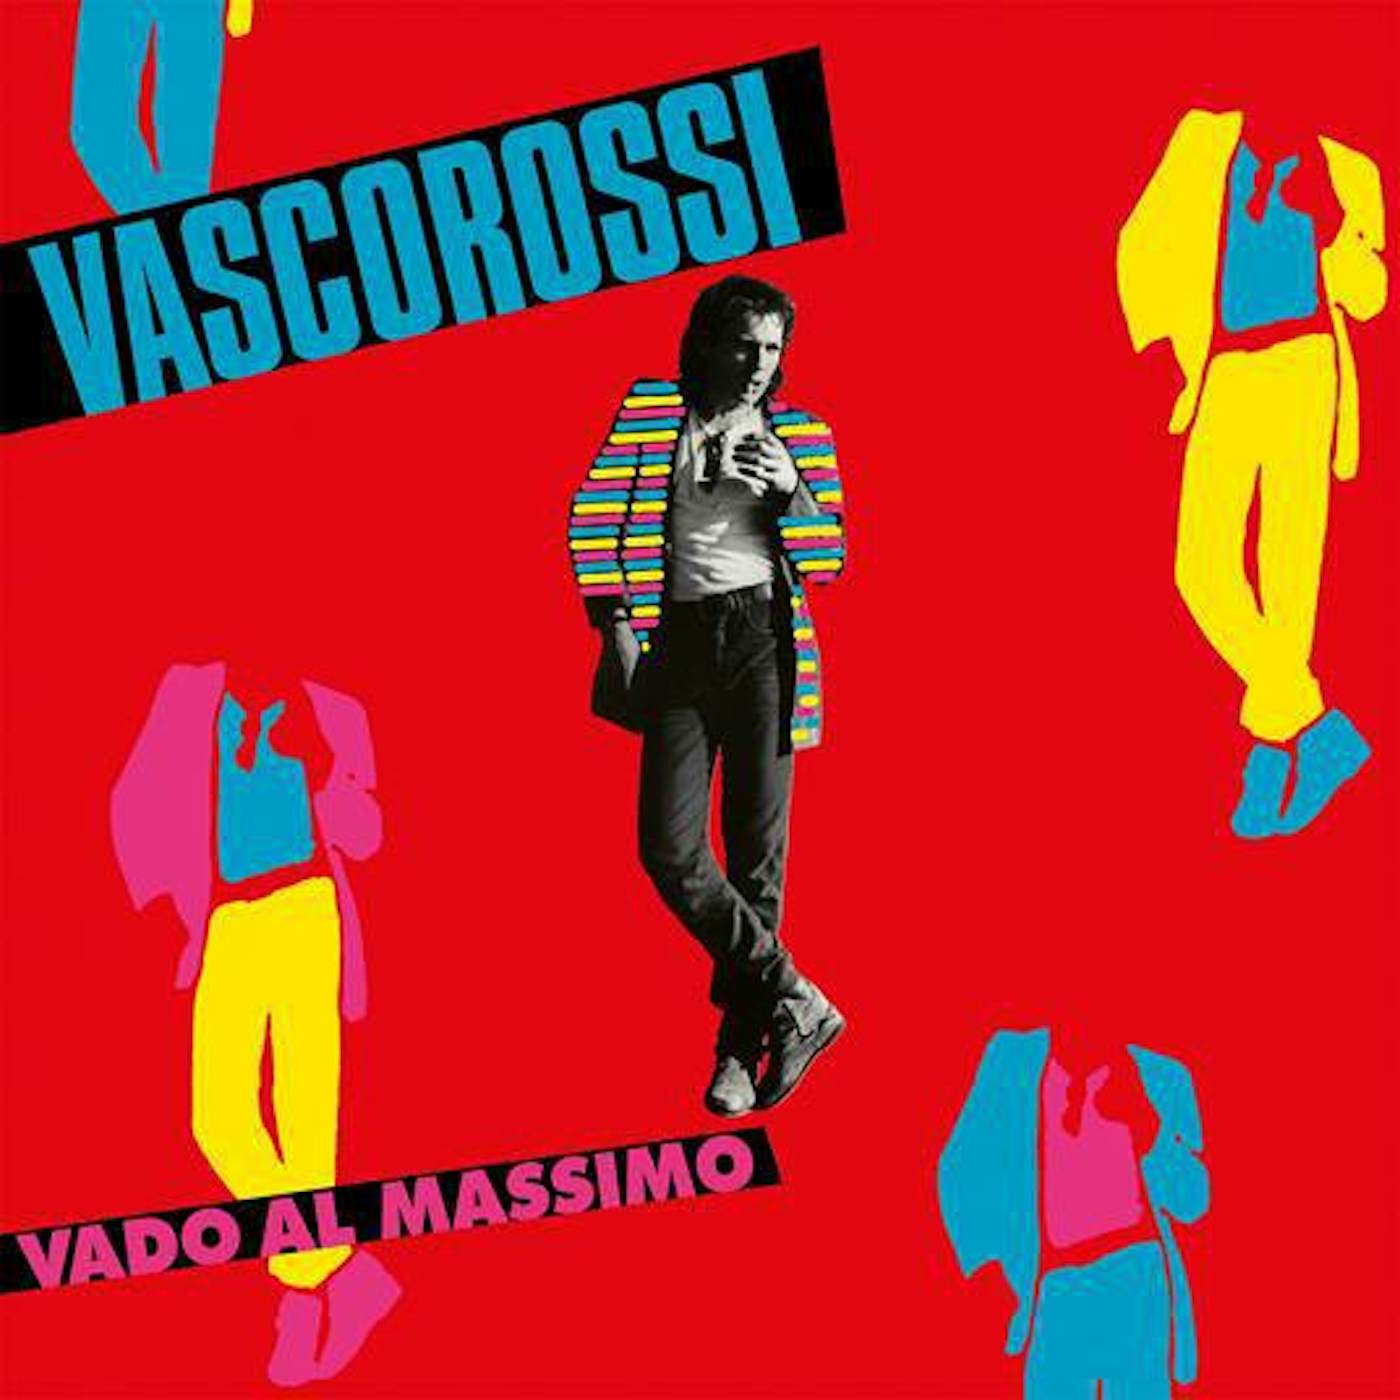 2CD Vinili IL SUPERVISSUTO di Vasco Rossi